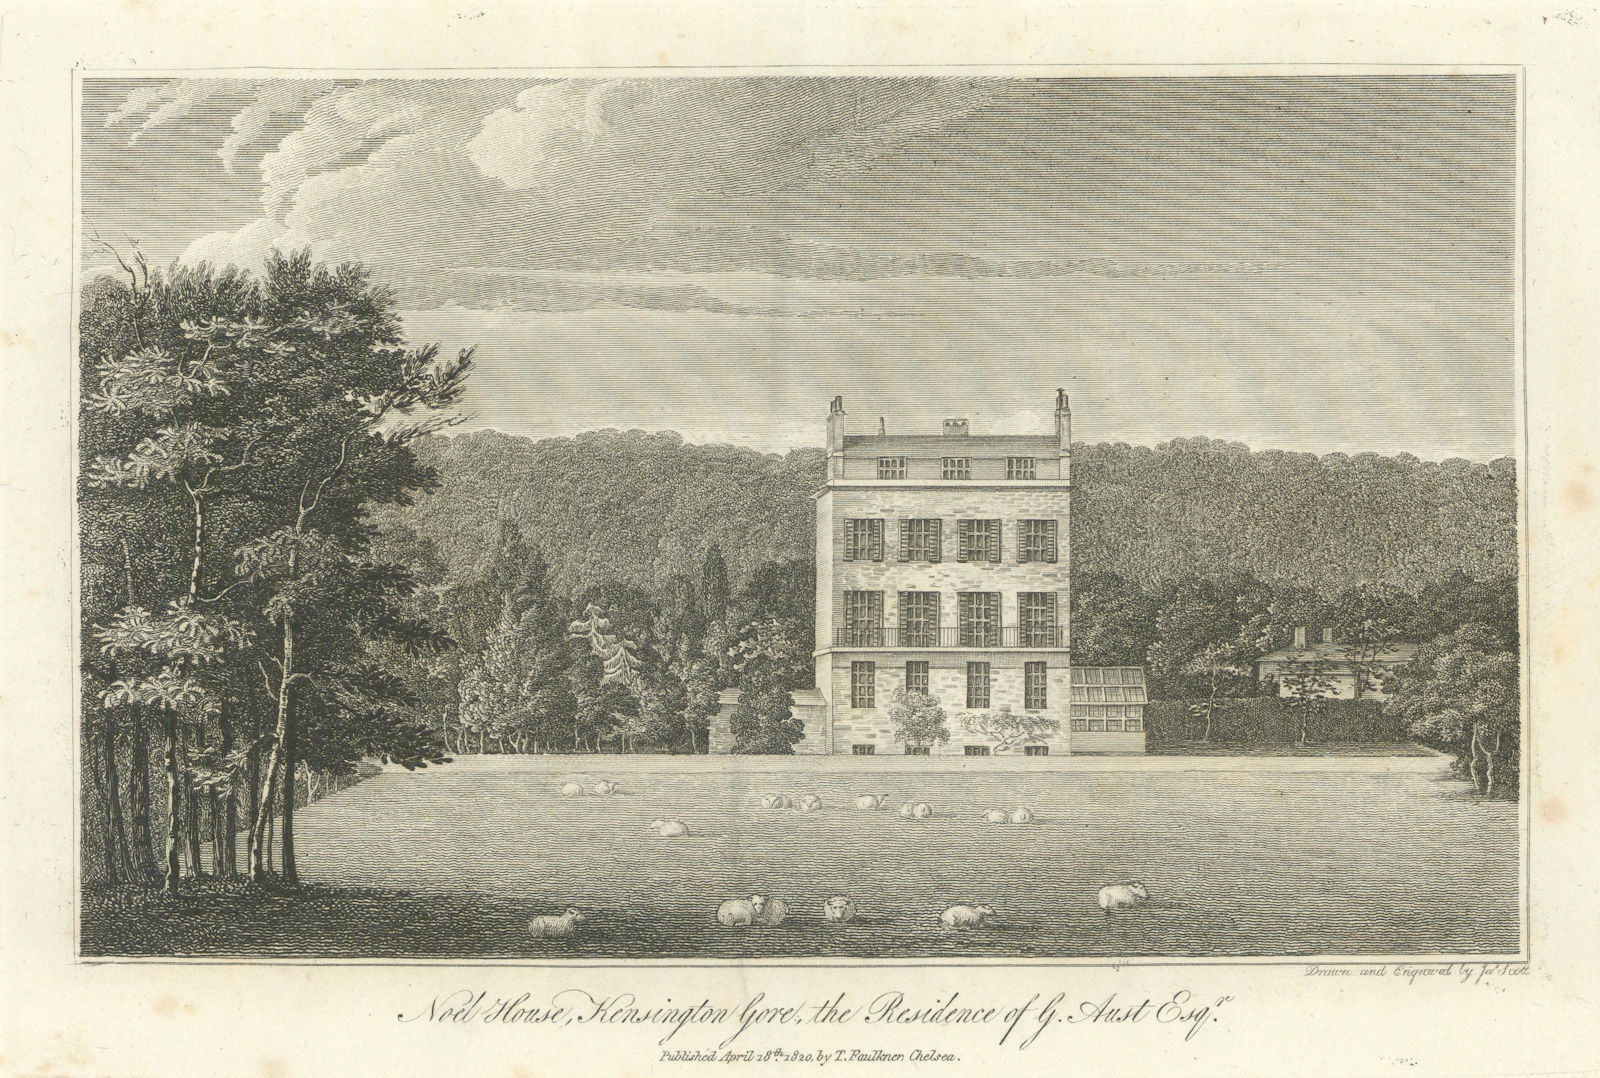 Associate Product Noel House, Kensington Gore by Thomas Faulkner. Redeveloped 1861. 1820 print